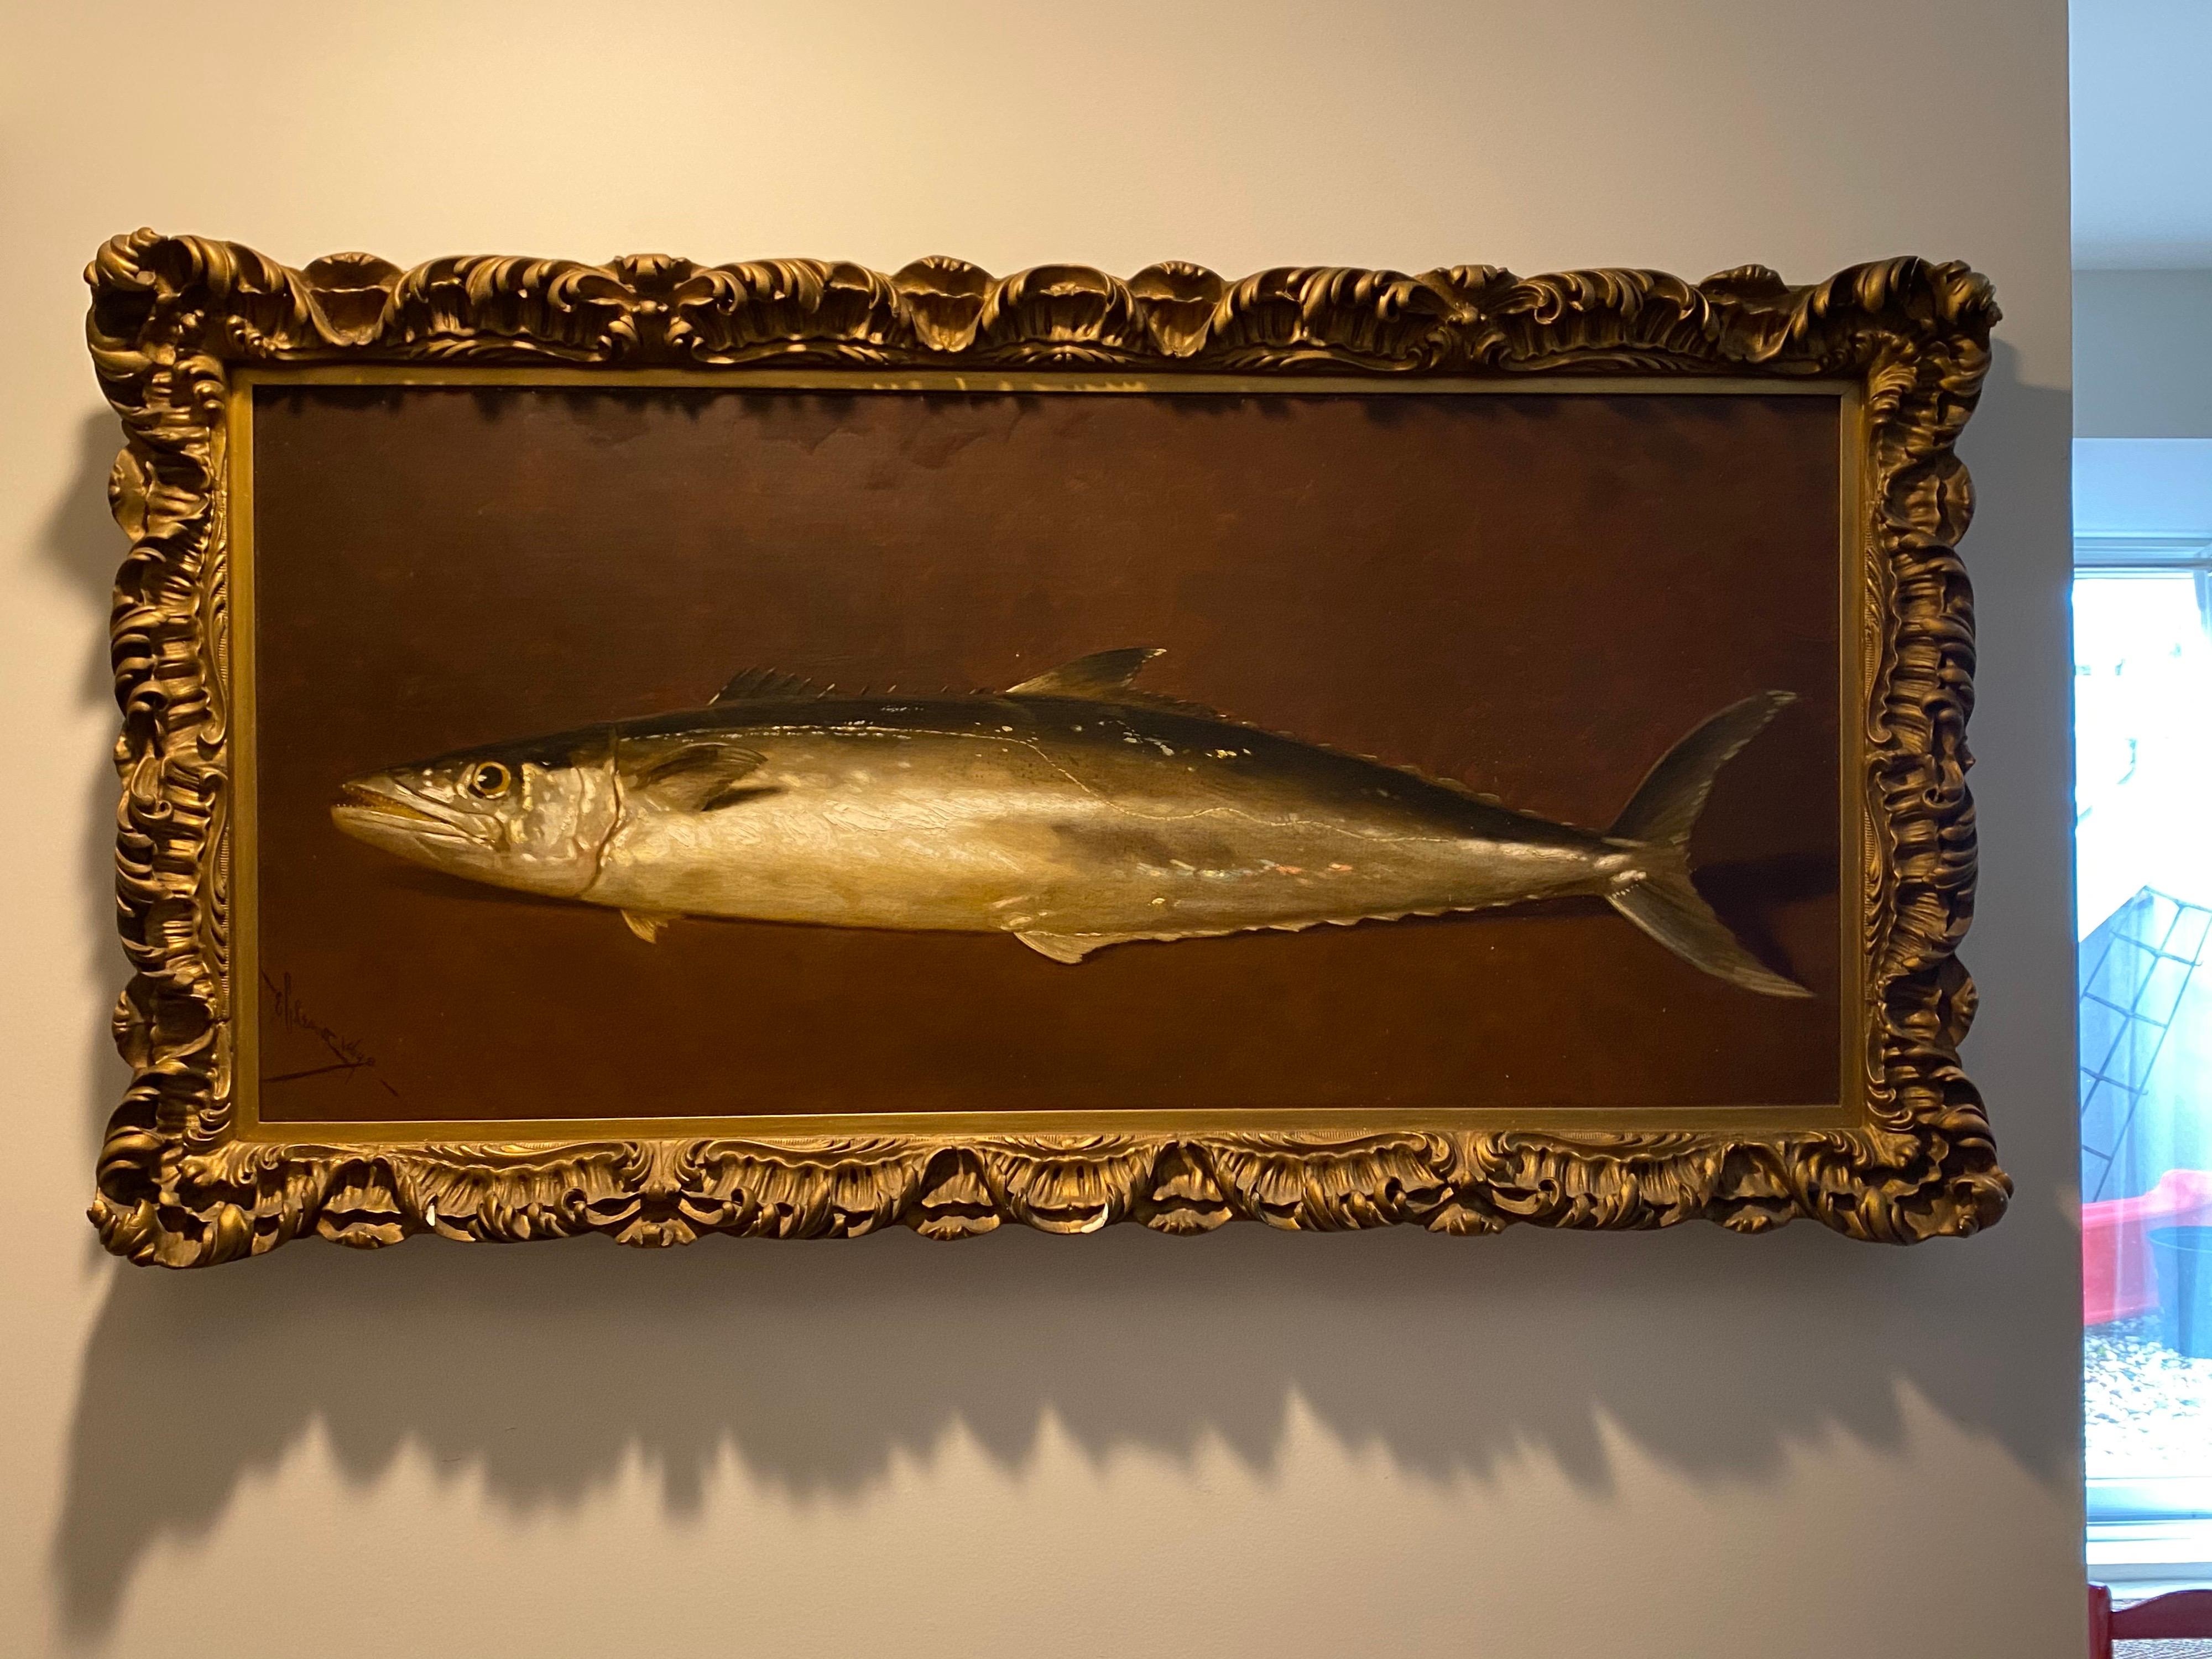 Edward Chalmers Leavitt, américain (1842-1904),
Maquereau royal, nature morte de poisson, 
huile sur toile, 
signé et daté : e C Leavitt 1898